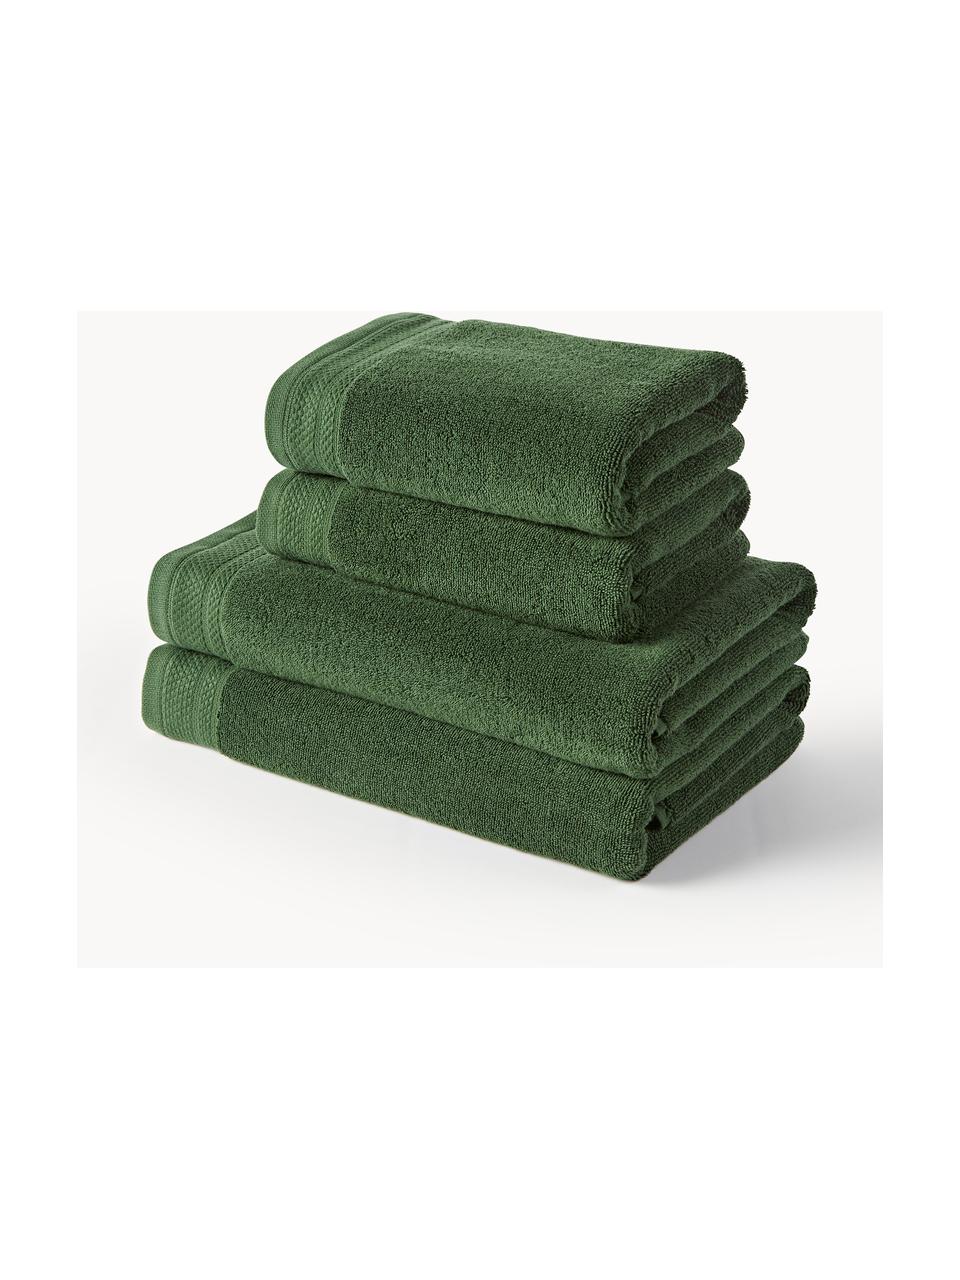 Lot de serviettes de bain en coton bio Premium, tailles variées, 100 % coton bio certifié GOTS (par GCL International, GCL-300517)
Qualité supérieure 600 g/m², Vert foncé, Lot de 6 éléments (serviettes d'invité, serviettes de toilette & draps de bain)